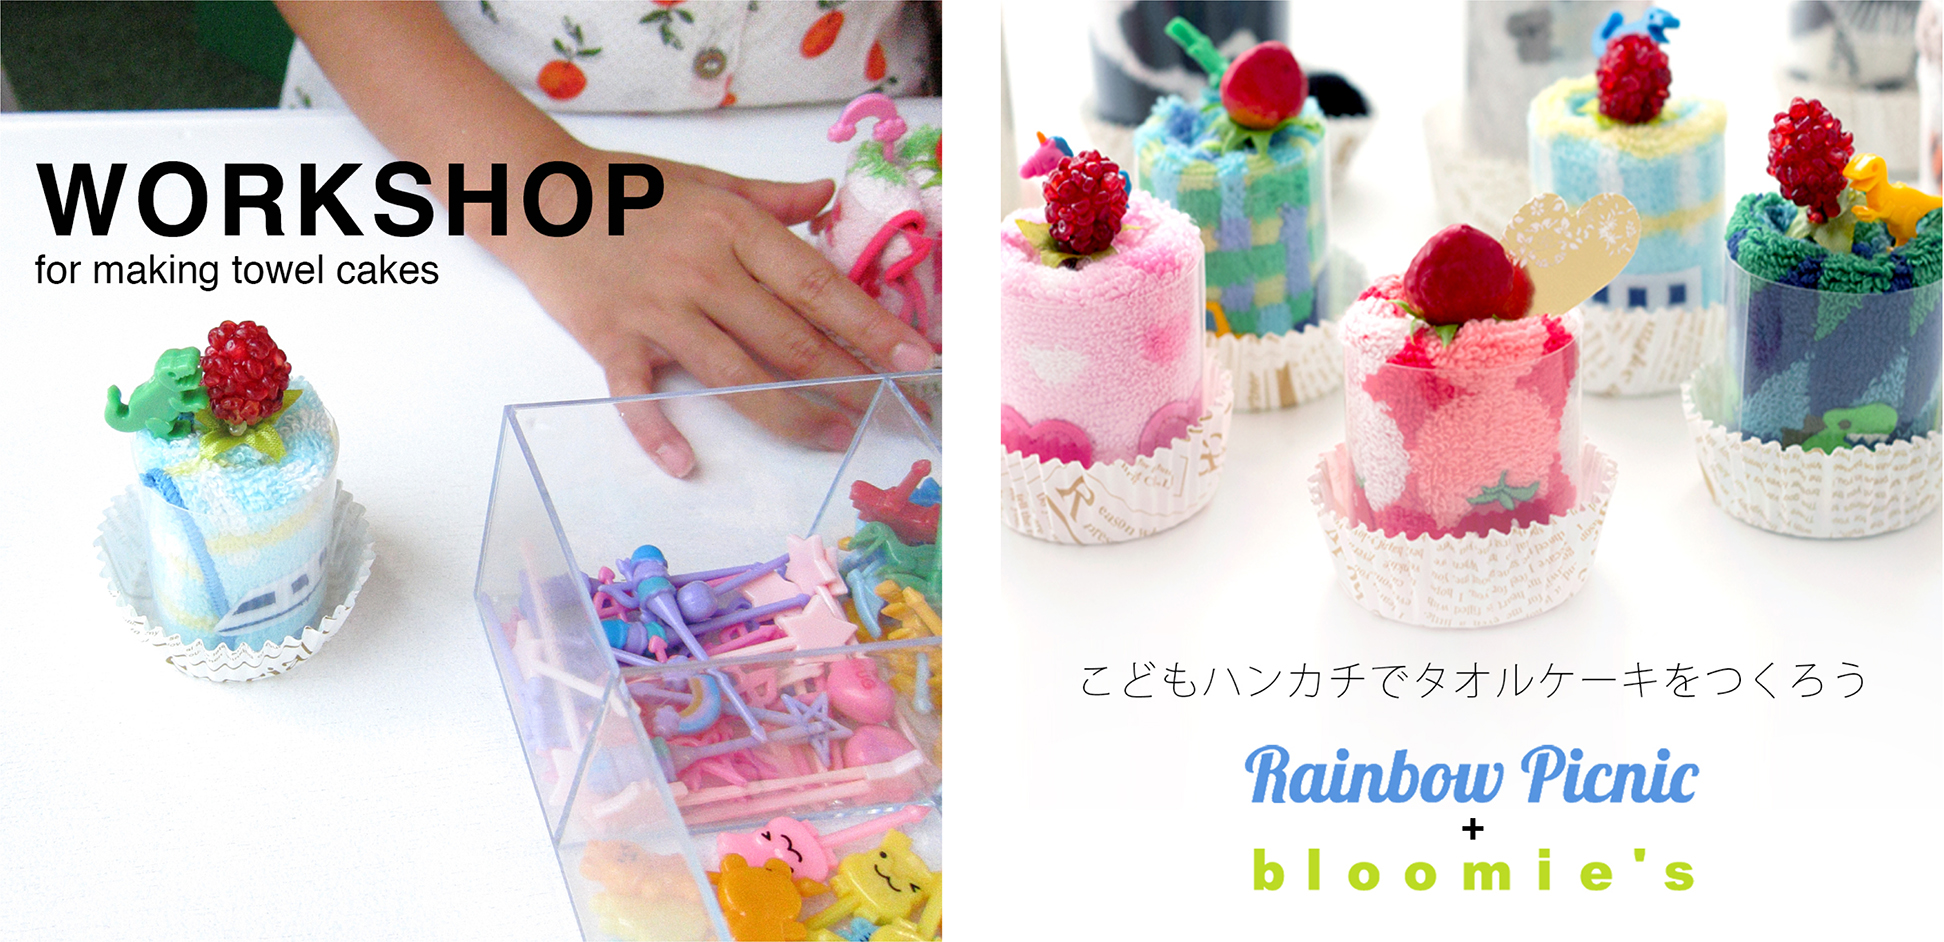 ブルーミーズが Rainbow Picnic In 町田シバヒロのイベントに参加します こどもハンカチでタオルケーキをつくろう ワークショップ開催 ブルーミング中西株式会社のプレスリリース